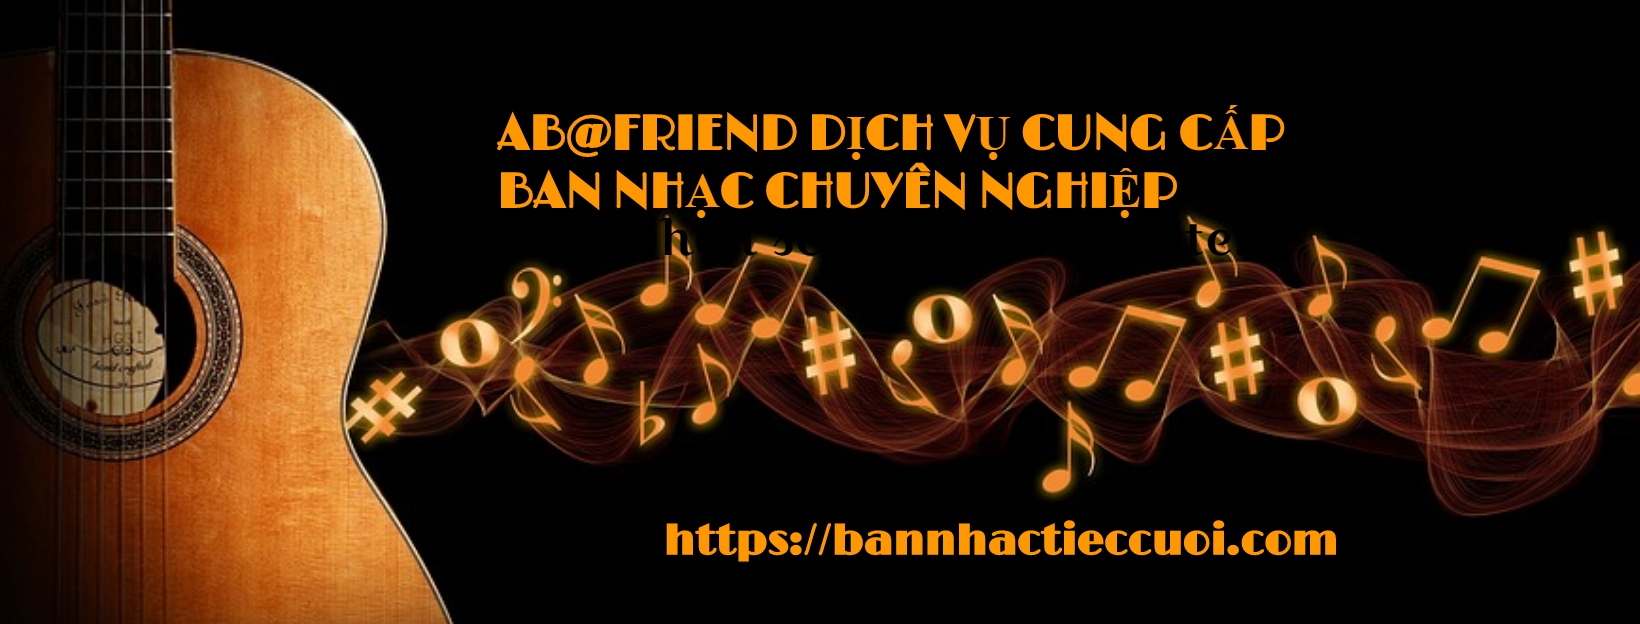 AB@Friend Music Banner 003